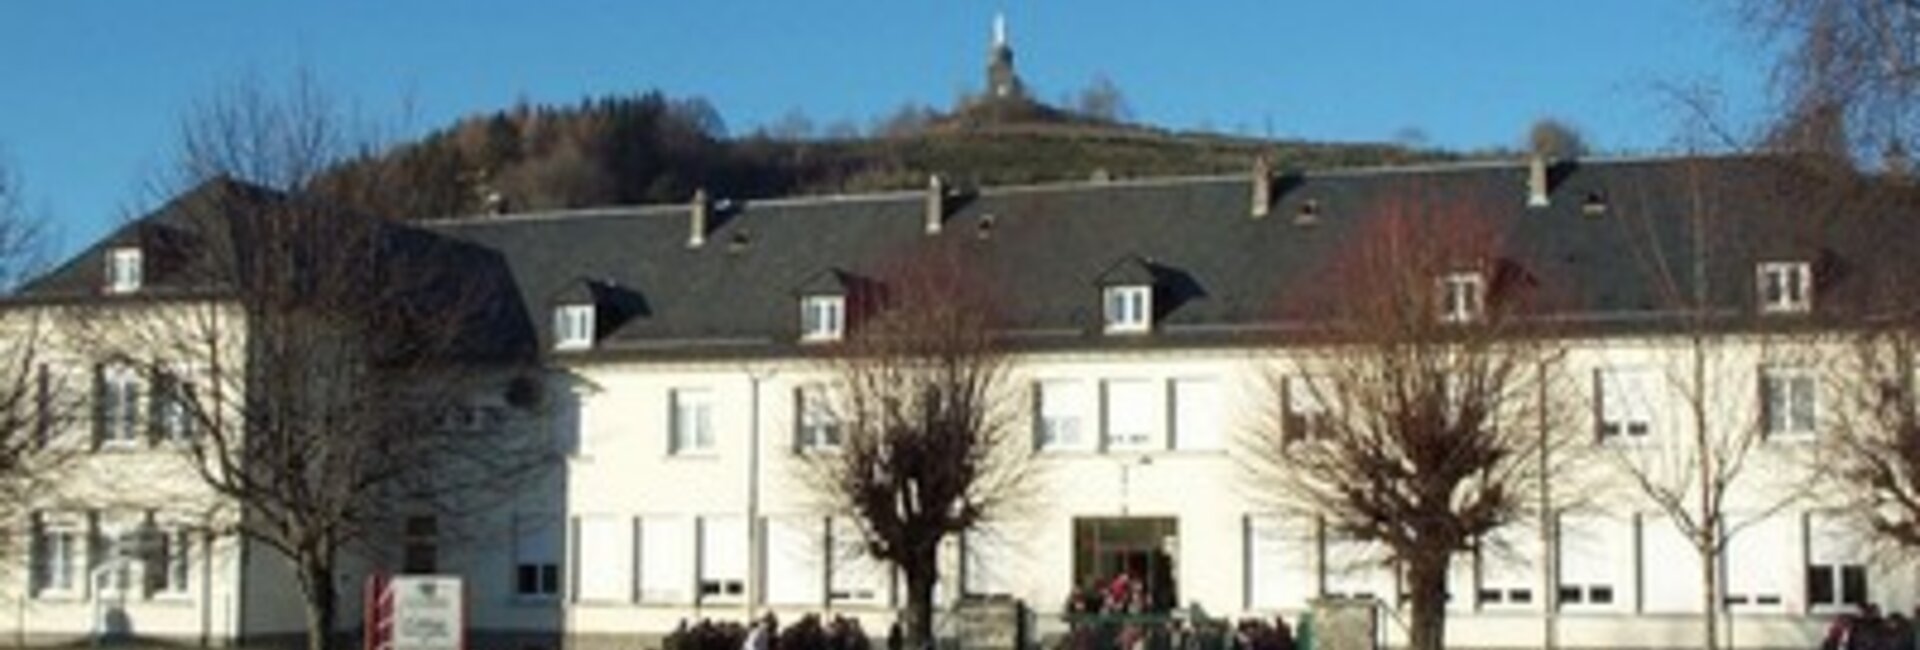 Collège Sancy Artense Éducation Puy-de-Dôme Auvergne